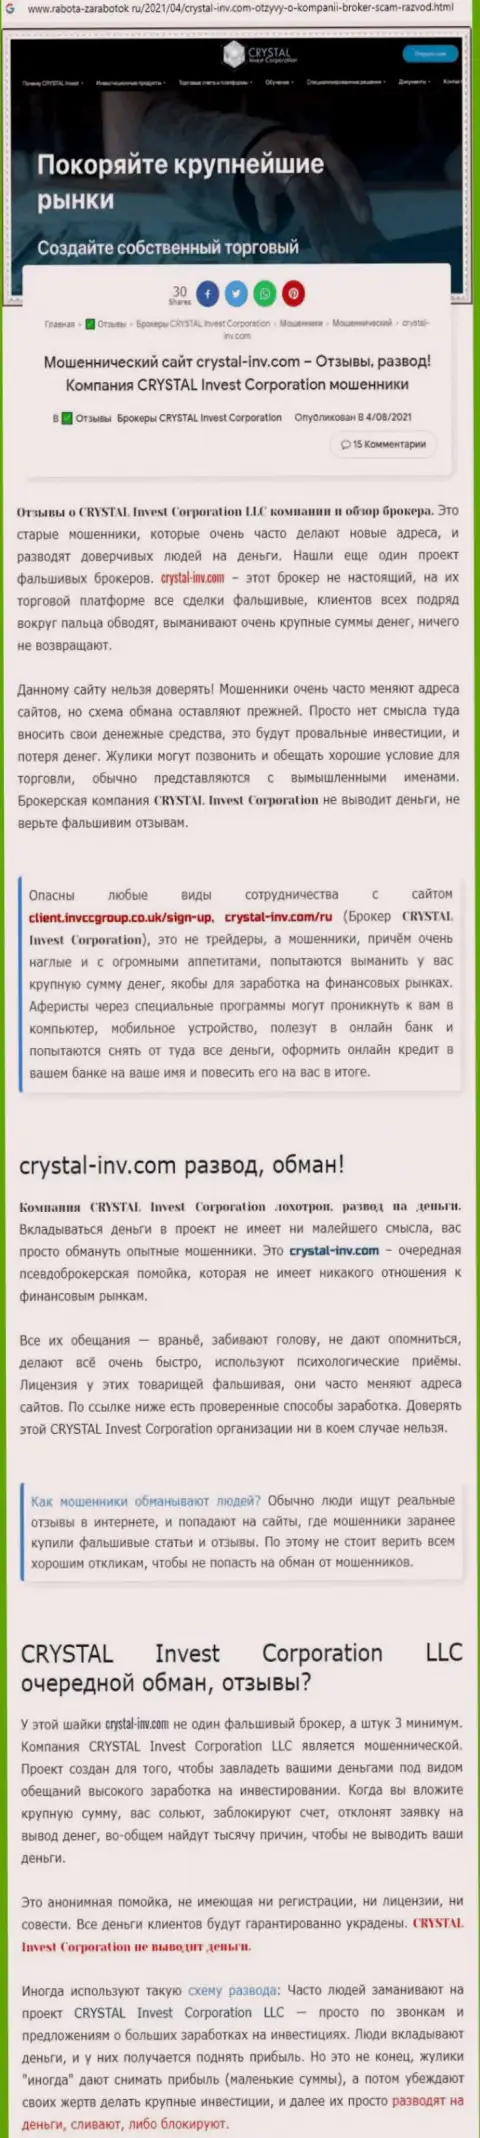 Материал, выводящий на чистую воду компанию Crystal-Inv Com, который взят с сайта с обзорами неправомерных действий различных организаций